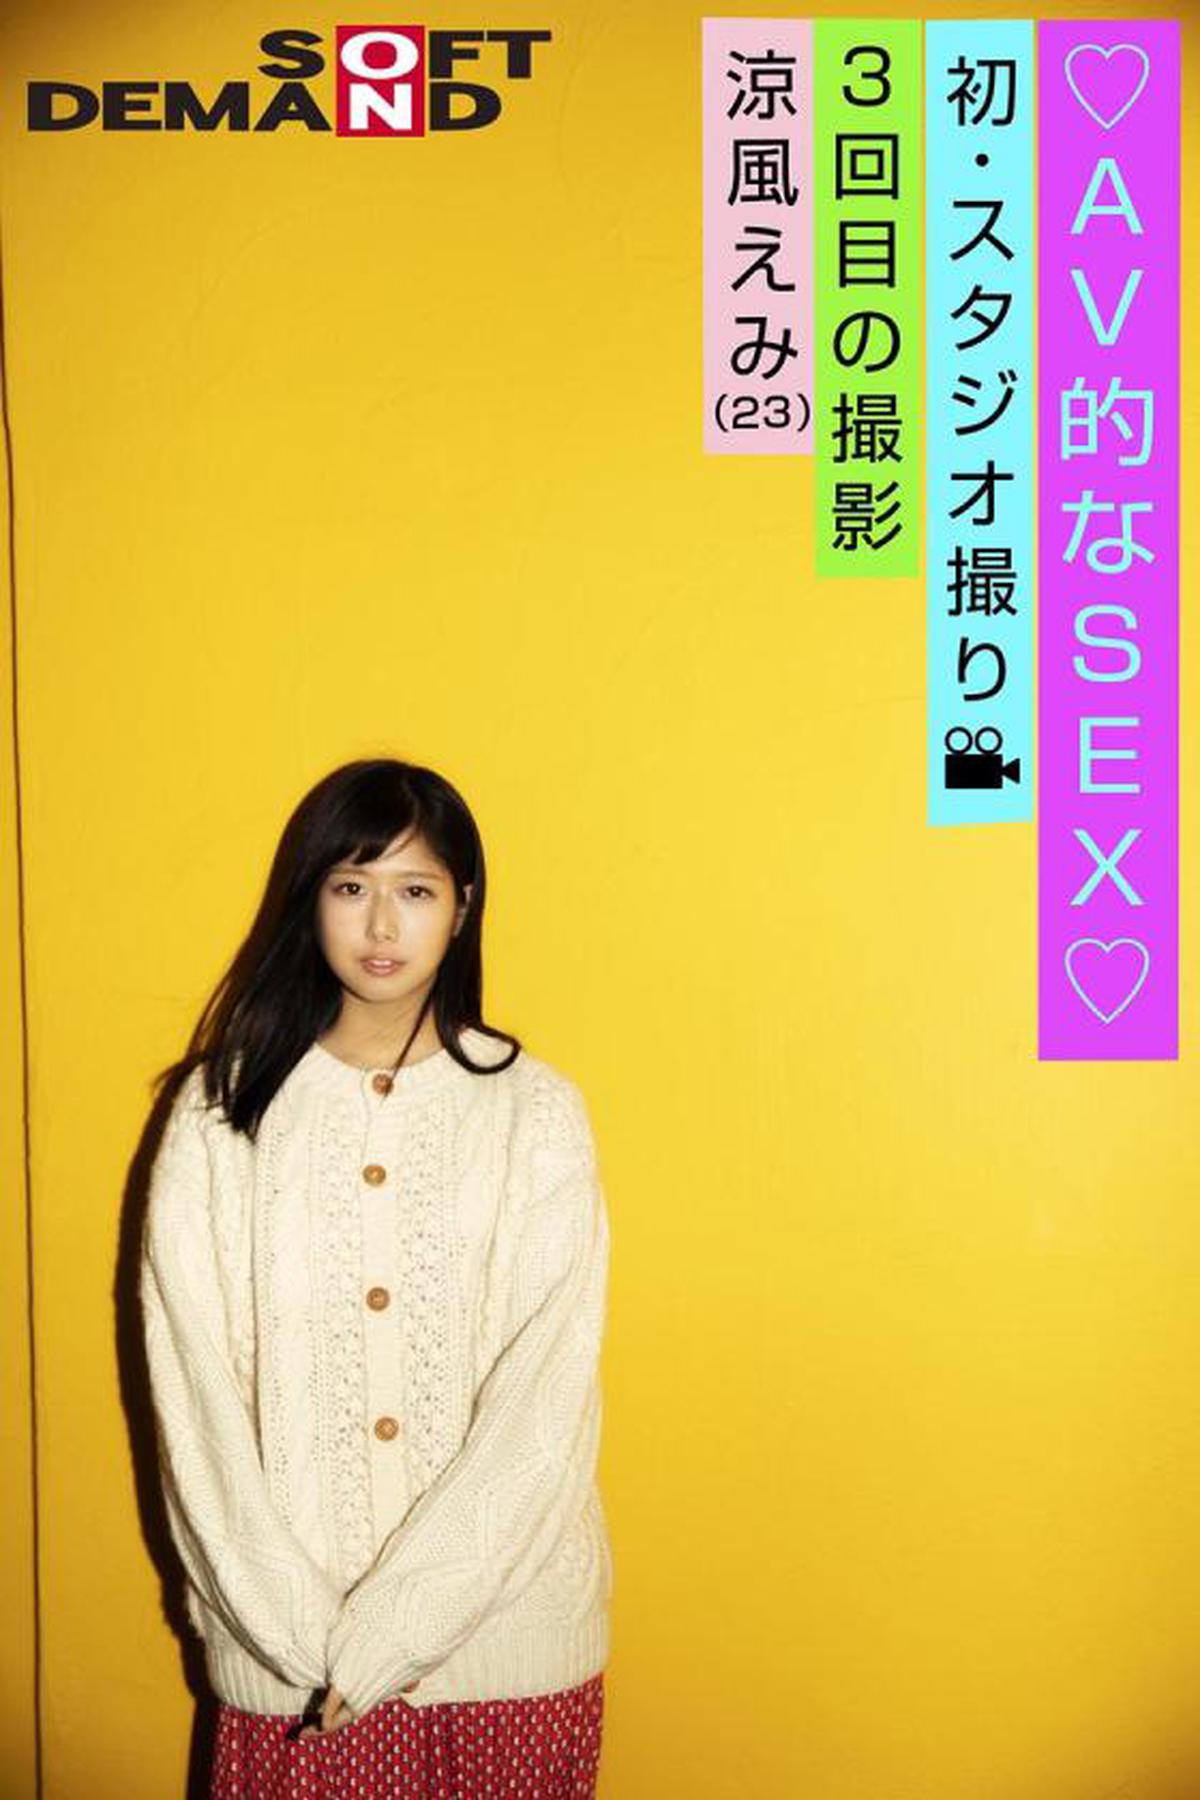 107EMOI-004 Emo Girl / Troisième tournage / Premier tournage en studio / SEXE de type AV / Suzukaze Emi (23) / Dans un endroit lumineux / Assez de tension